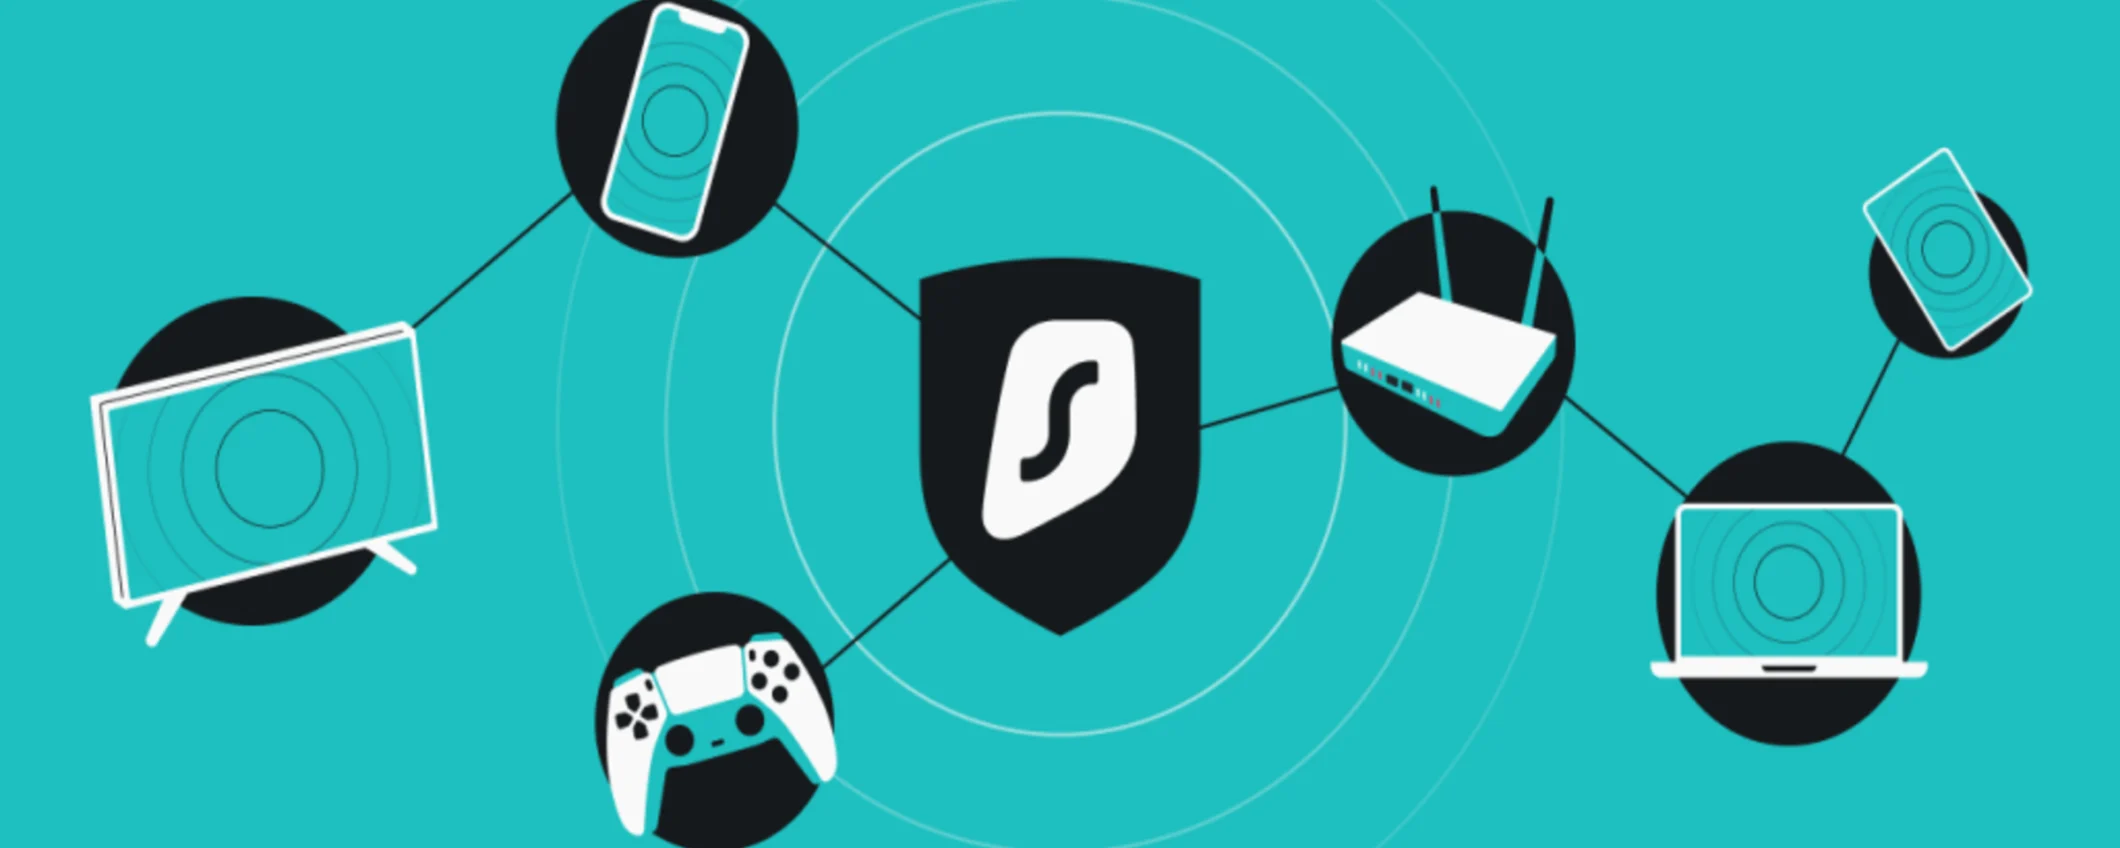 Surfshark One: l'antivirus con VPN inclusa oggi a prezzo SUPER SCONTATO